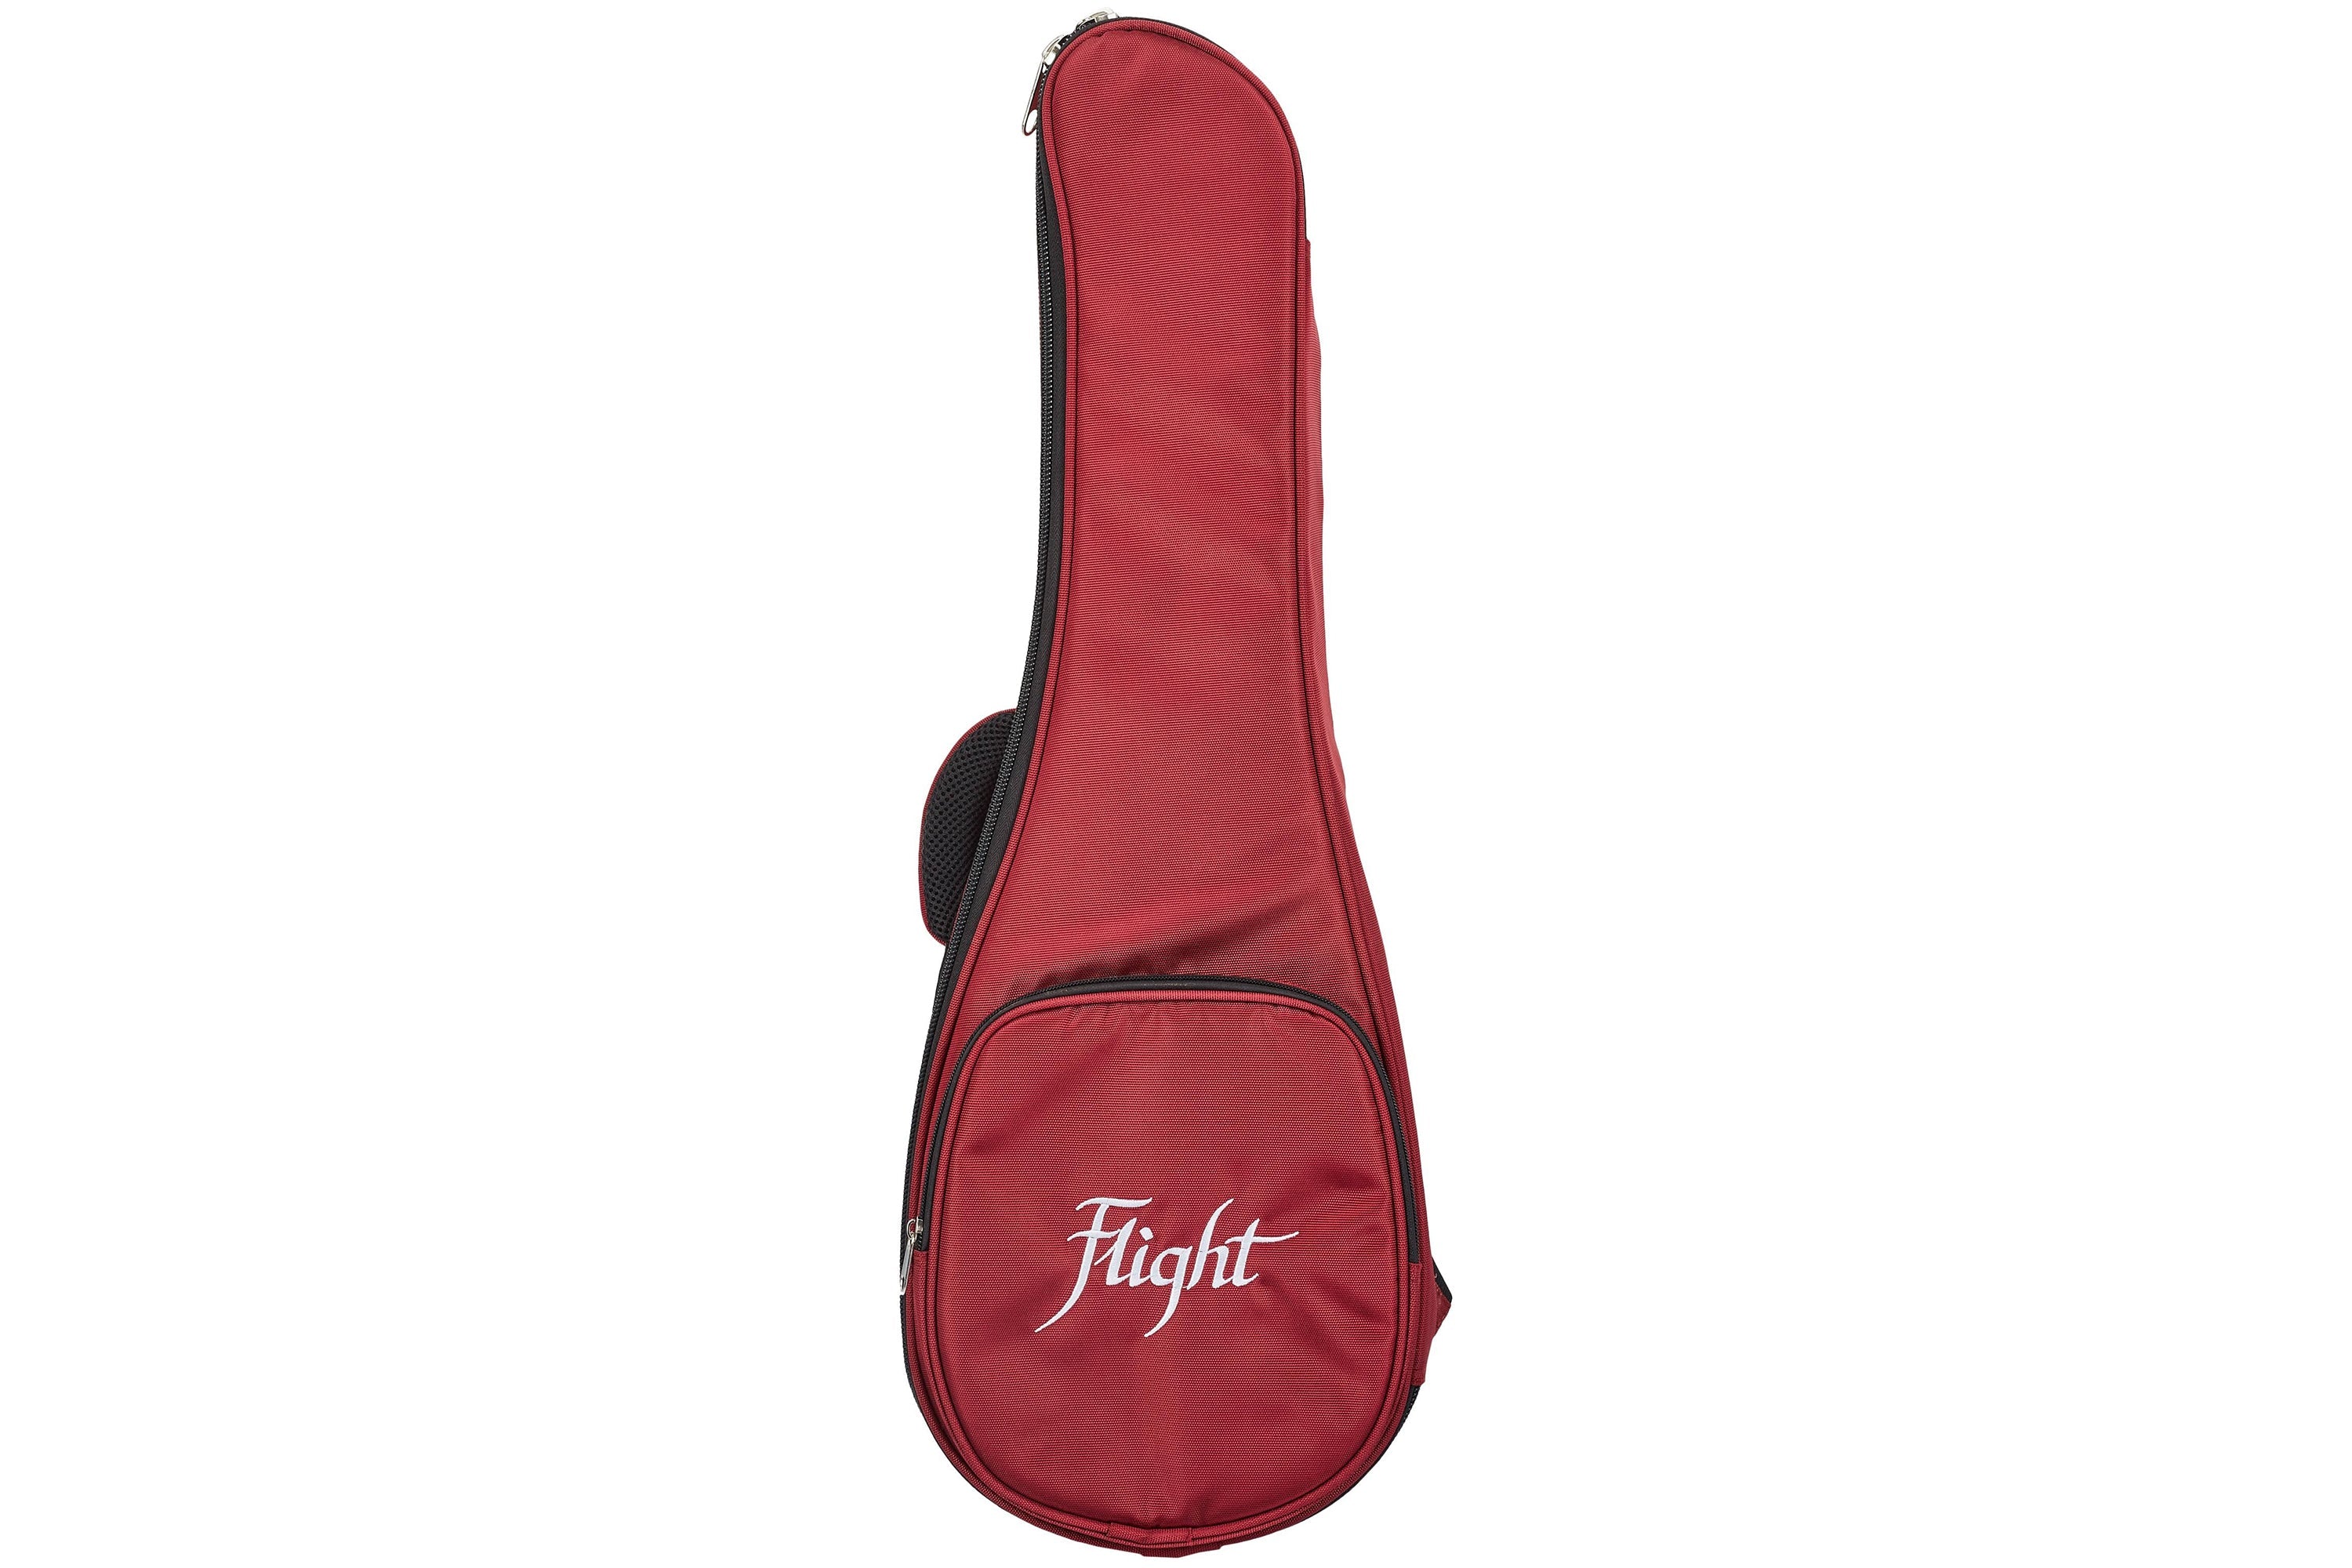 Flight Premium Padded Gigbag - SUPER TENOR - RED